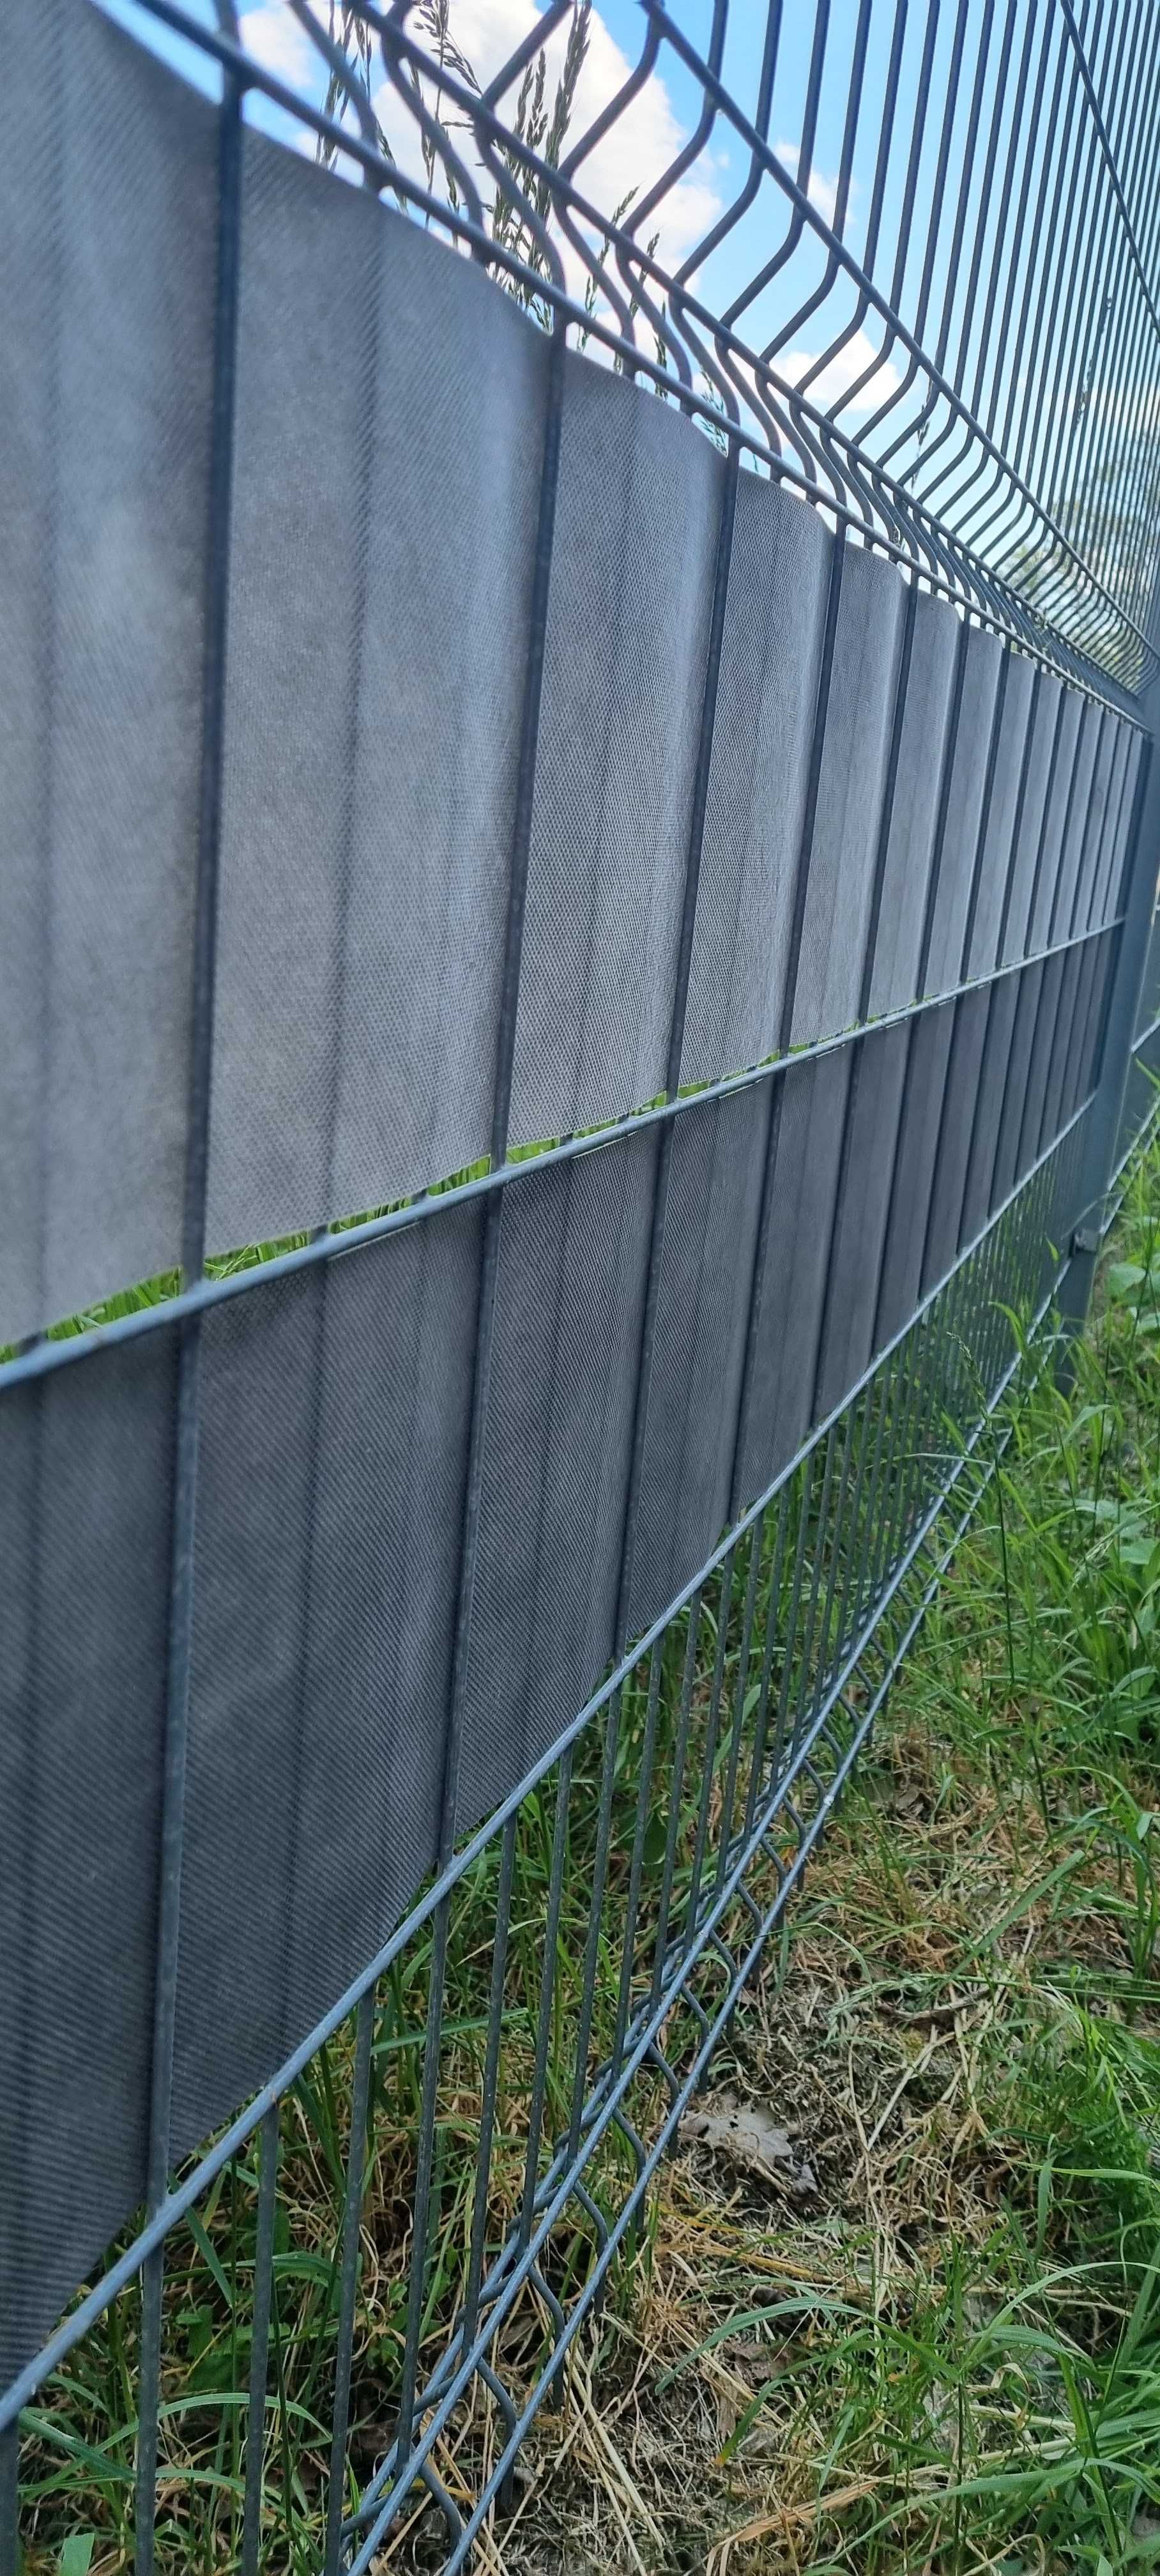 Taśma ogrodzeniowa 48m antracyt / szara